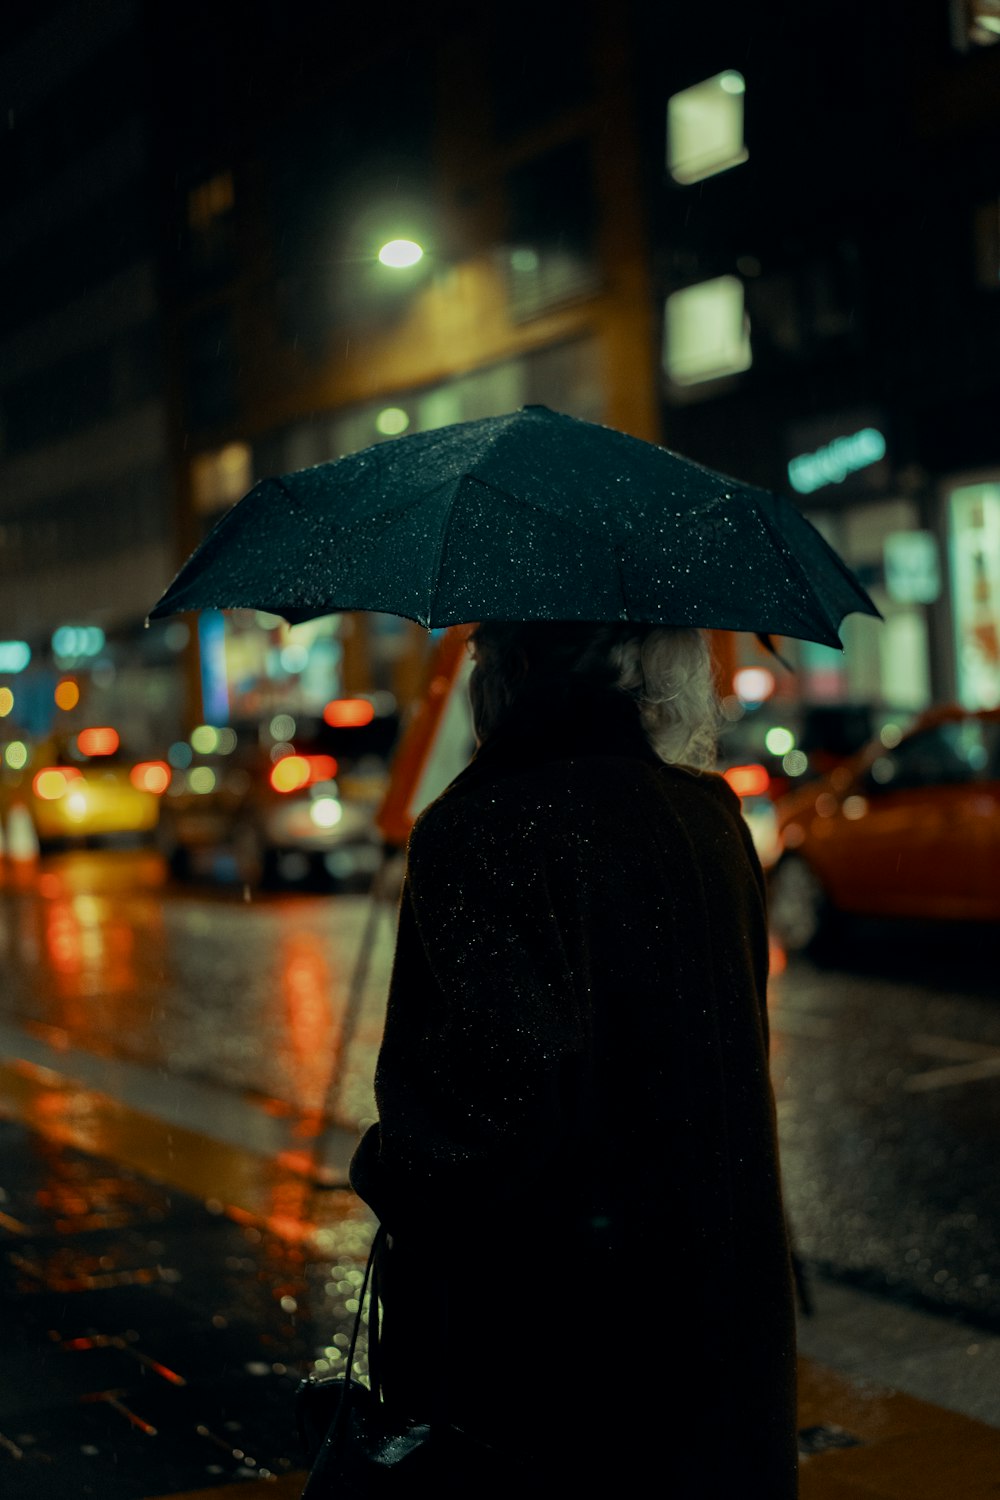 pessoa no casaco preto que segura o guarda-chuva